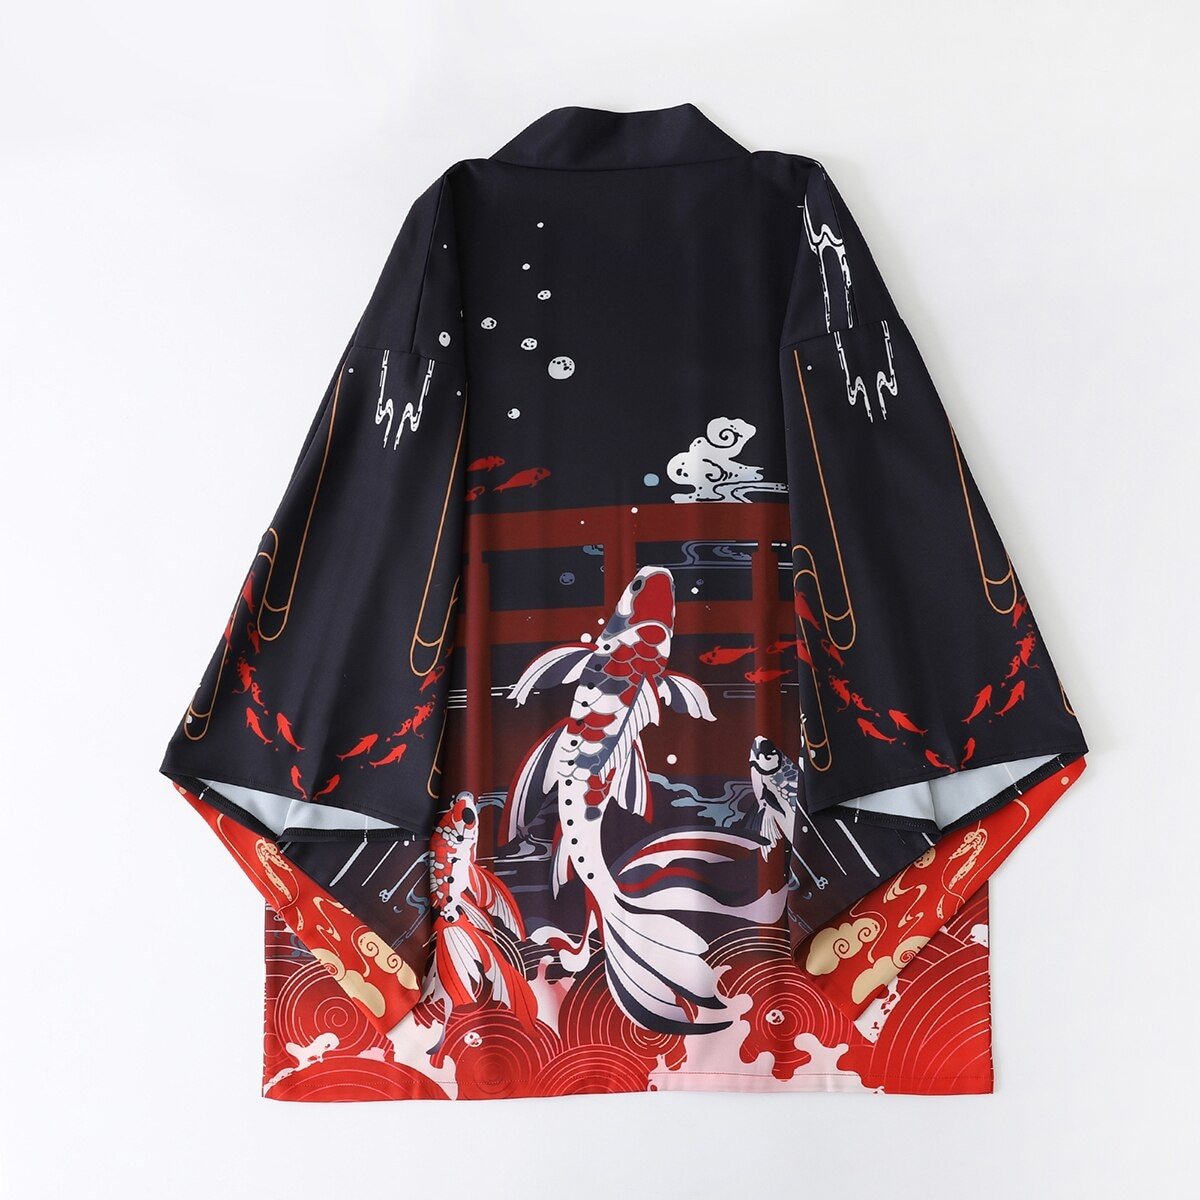 Haori Kimono Jacket Women’s One Size